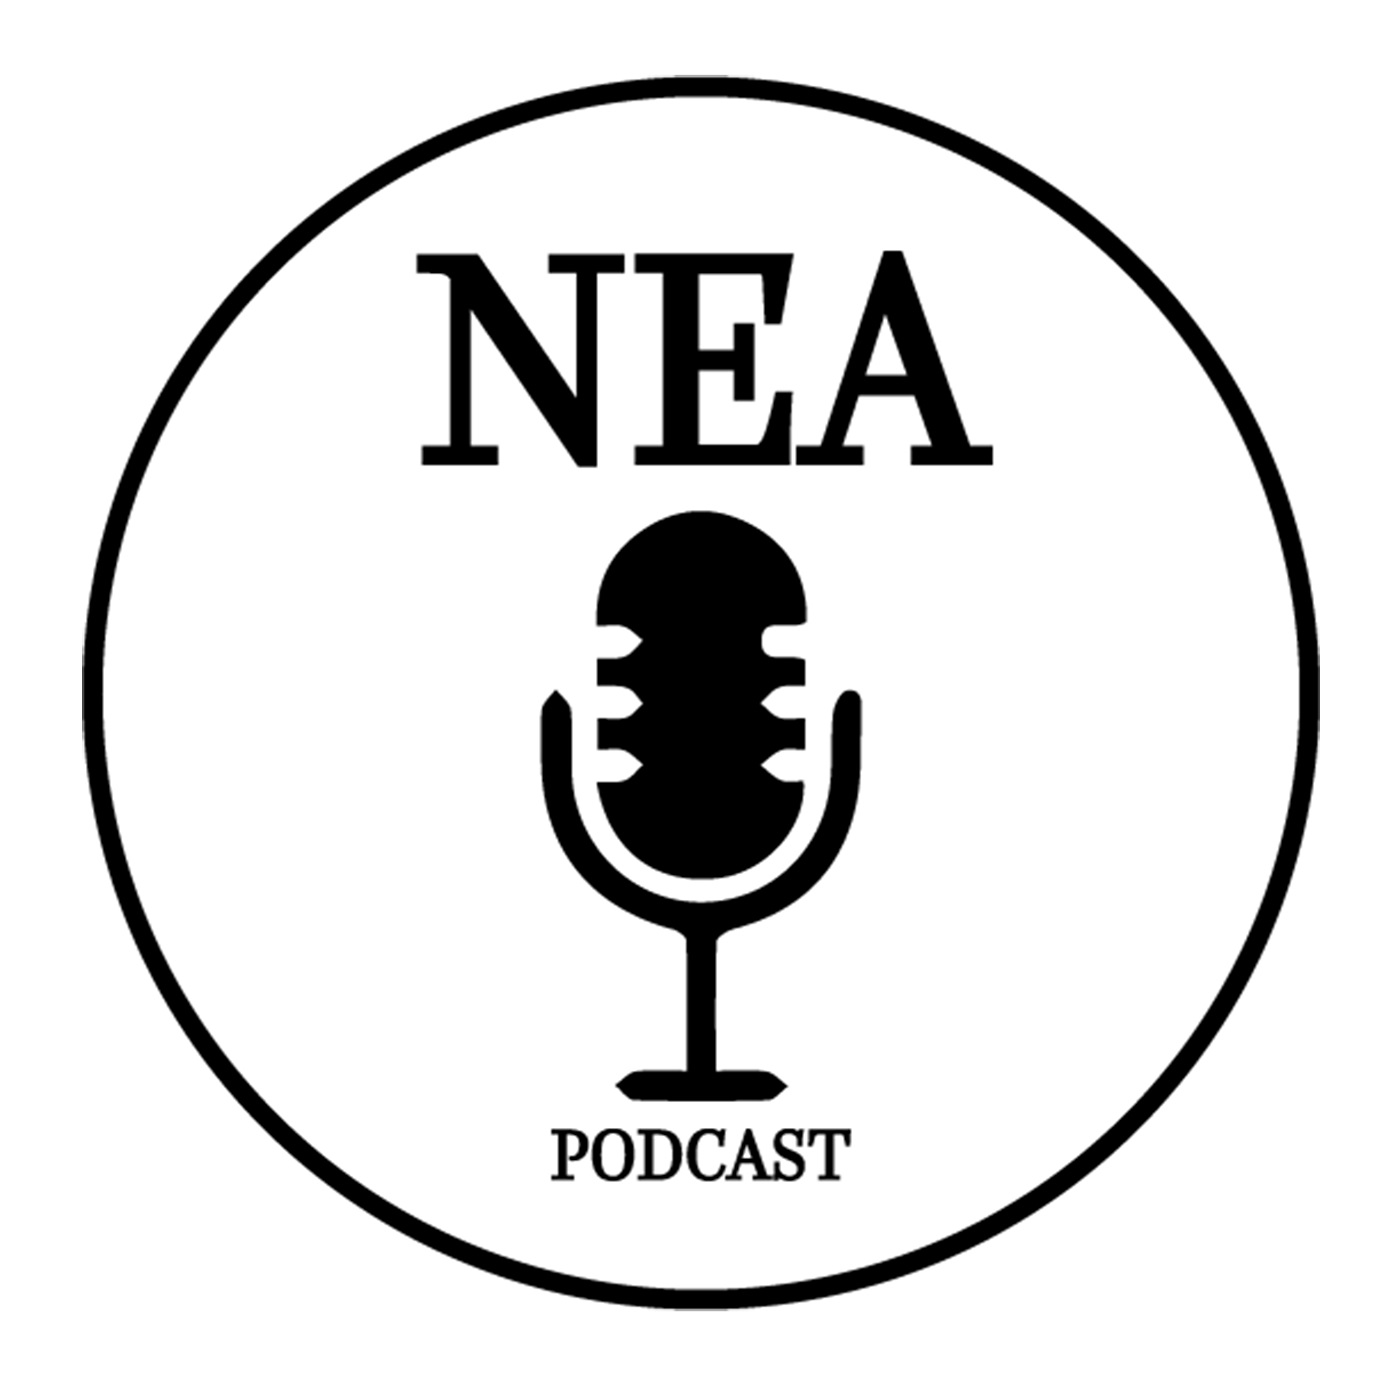 NEA Podcast